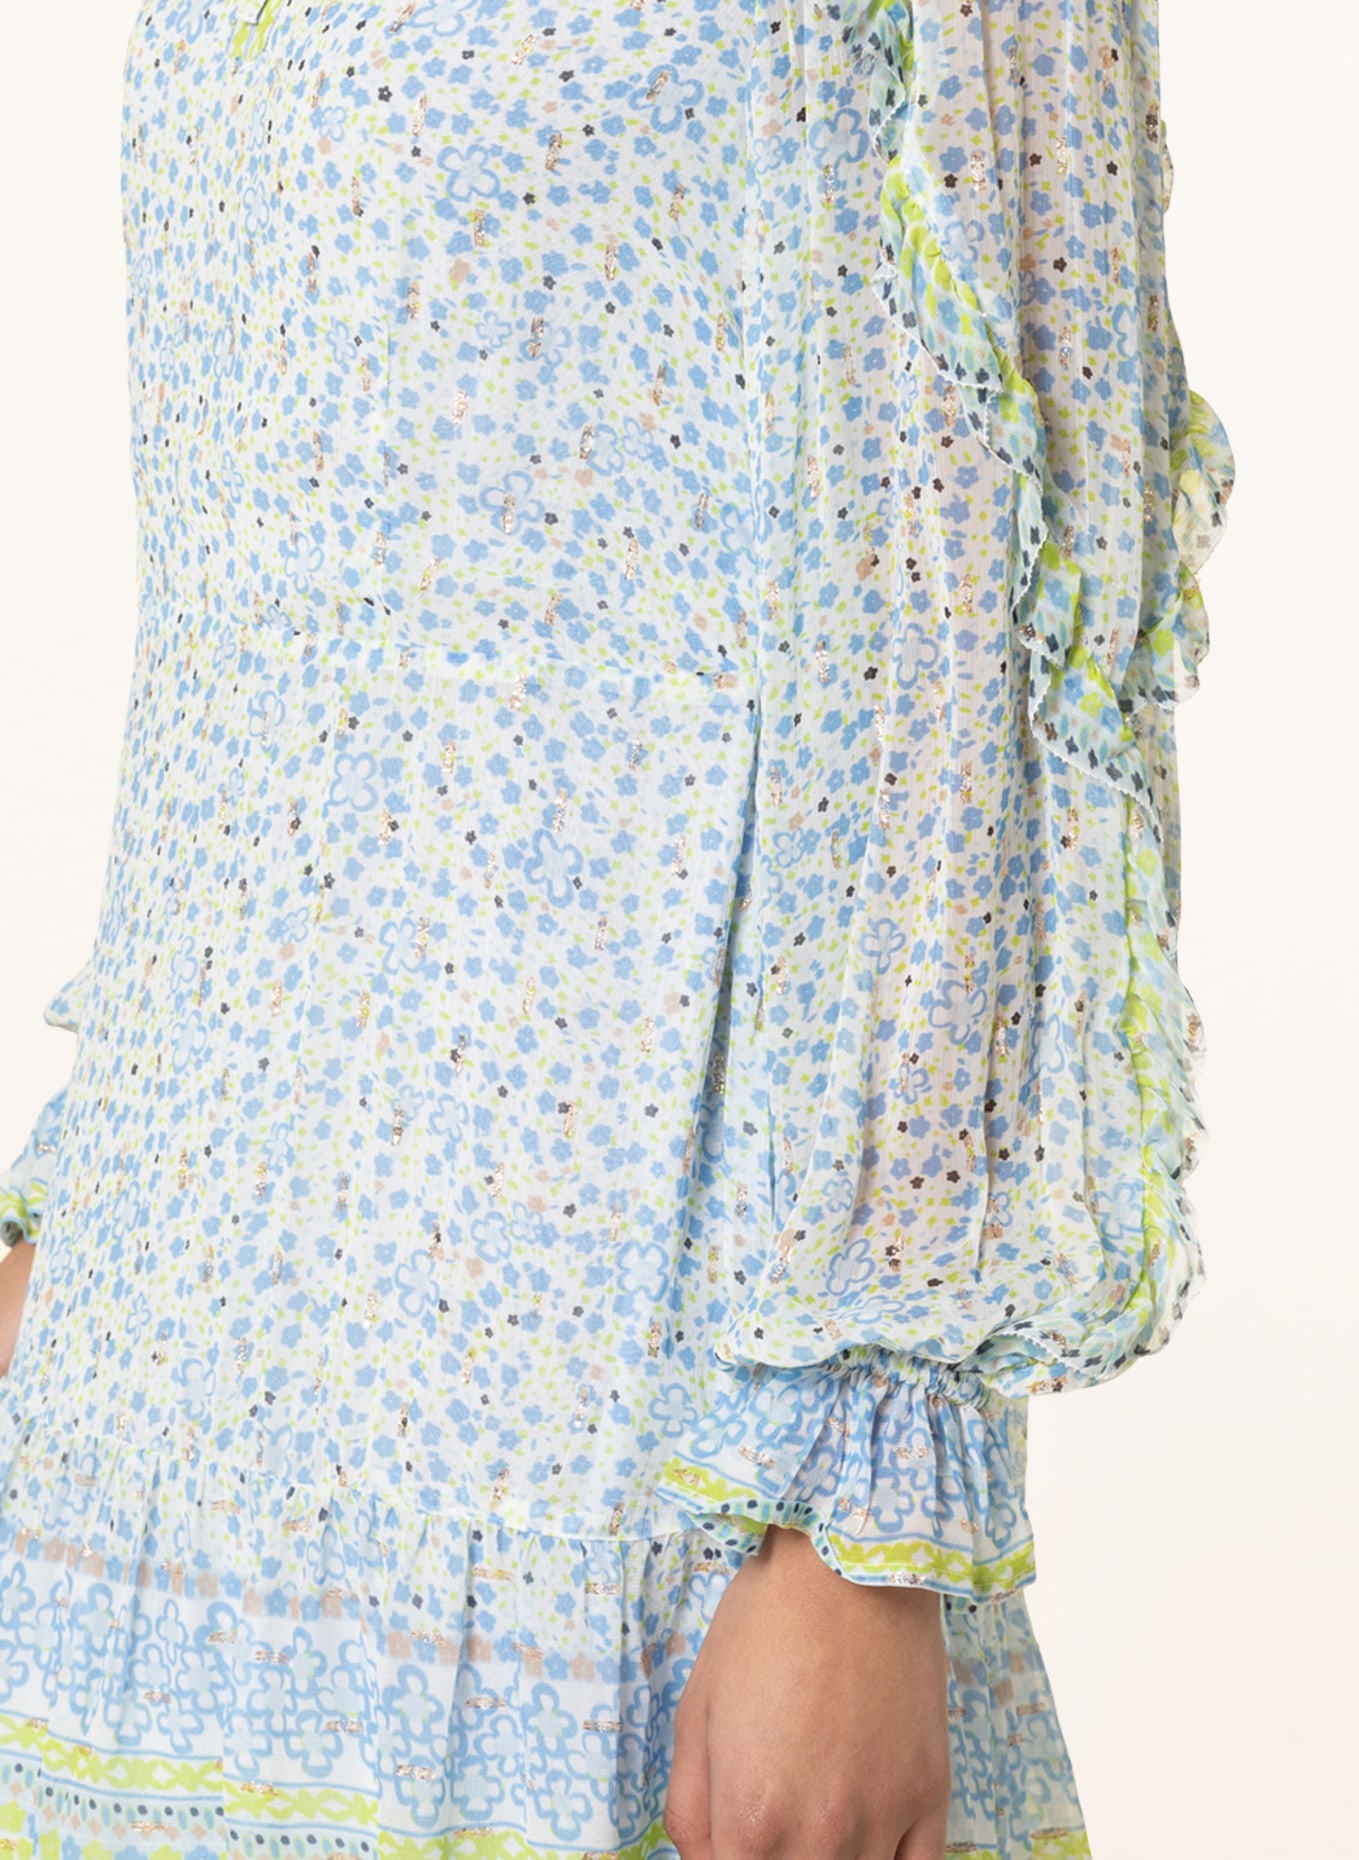 FABIENNE CHAPOT Kleid ADRIENNE mit Glanzgarn und Rüschen, Farbe: WEISS/ HELLBLAU/ HELLGRÜN (Bild 4)